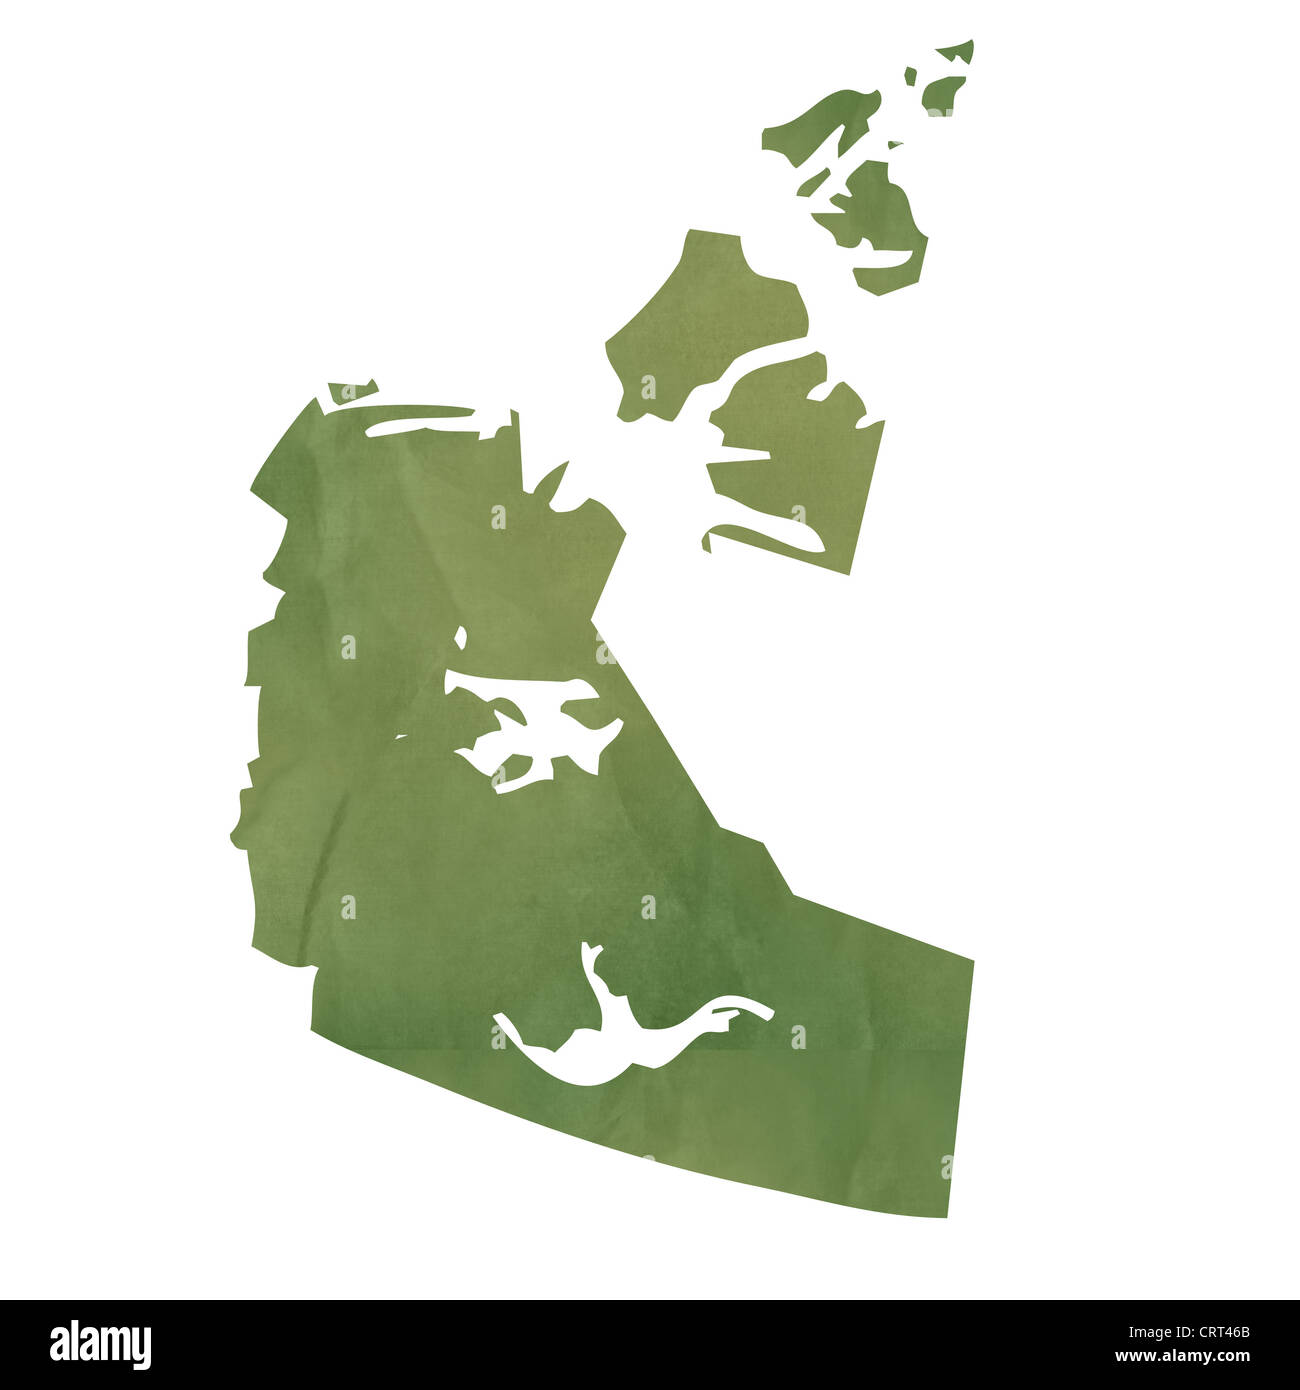 Territori del nord-ovest della provincia del Canada mappa in vecchio libro verde isolato su sfondo bianco. Foto Stock